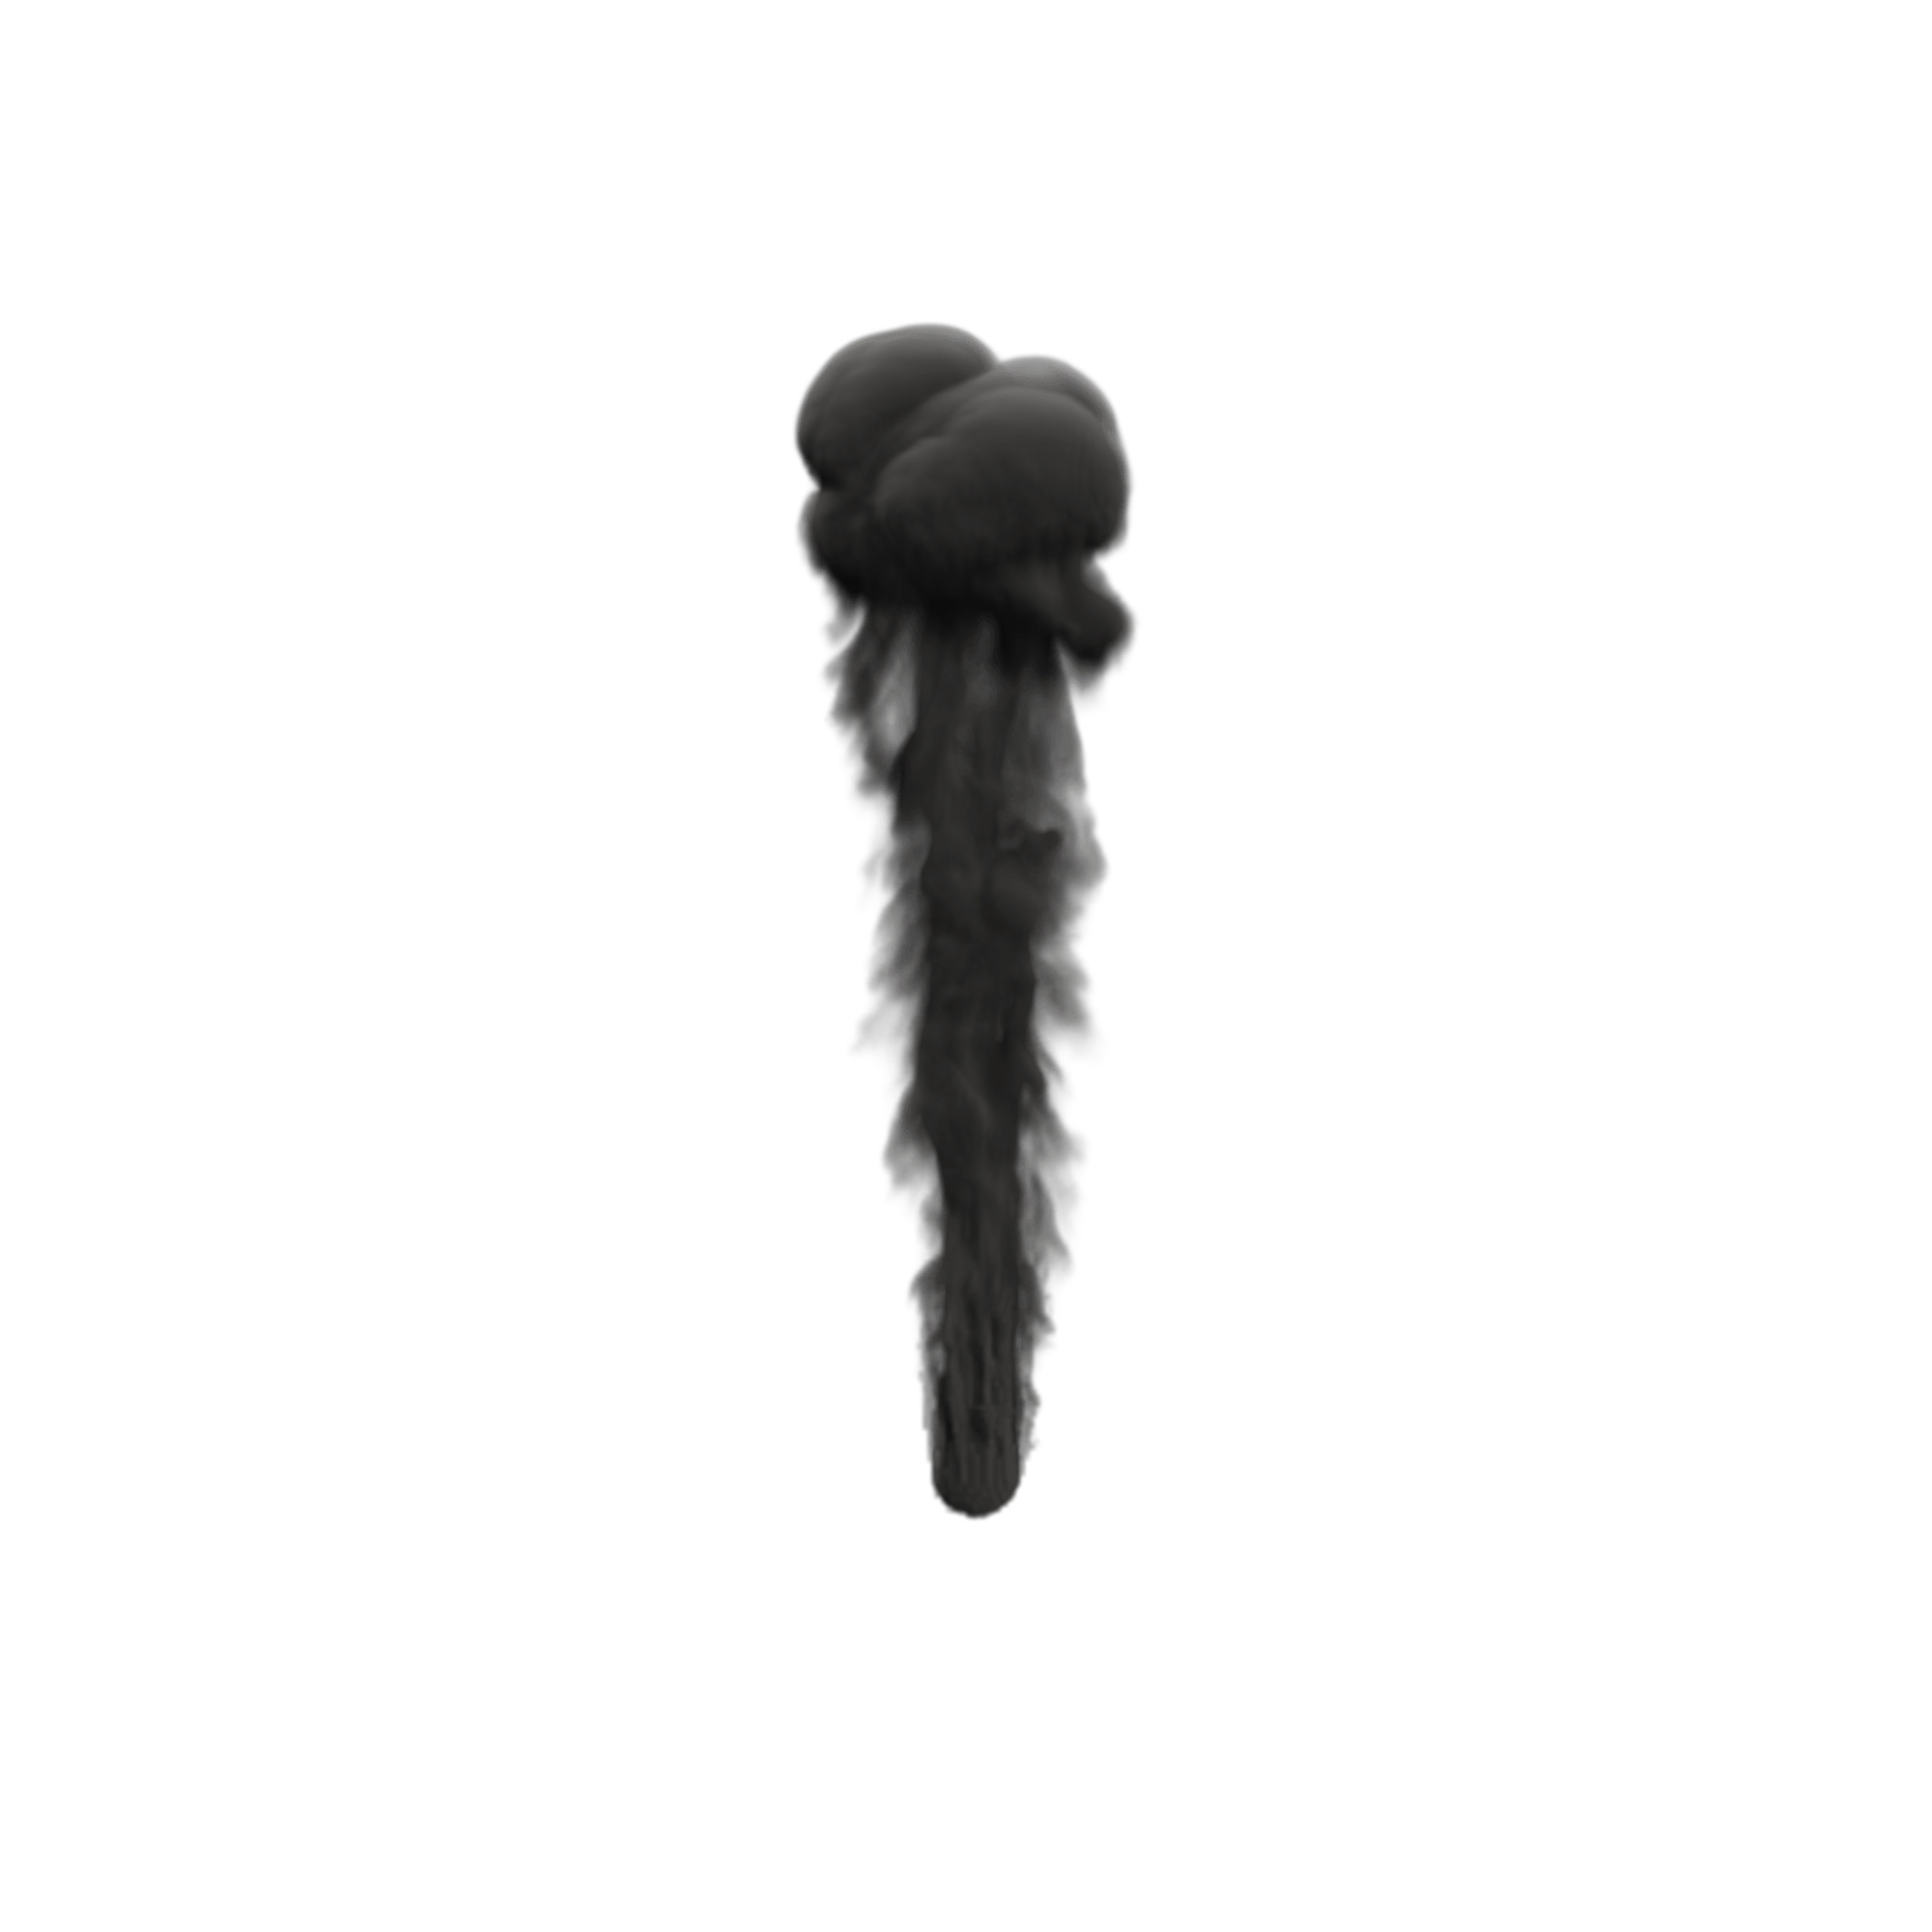 Black Smoke Mushroom icons